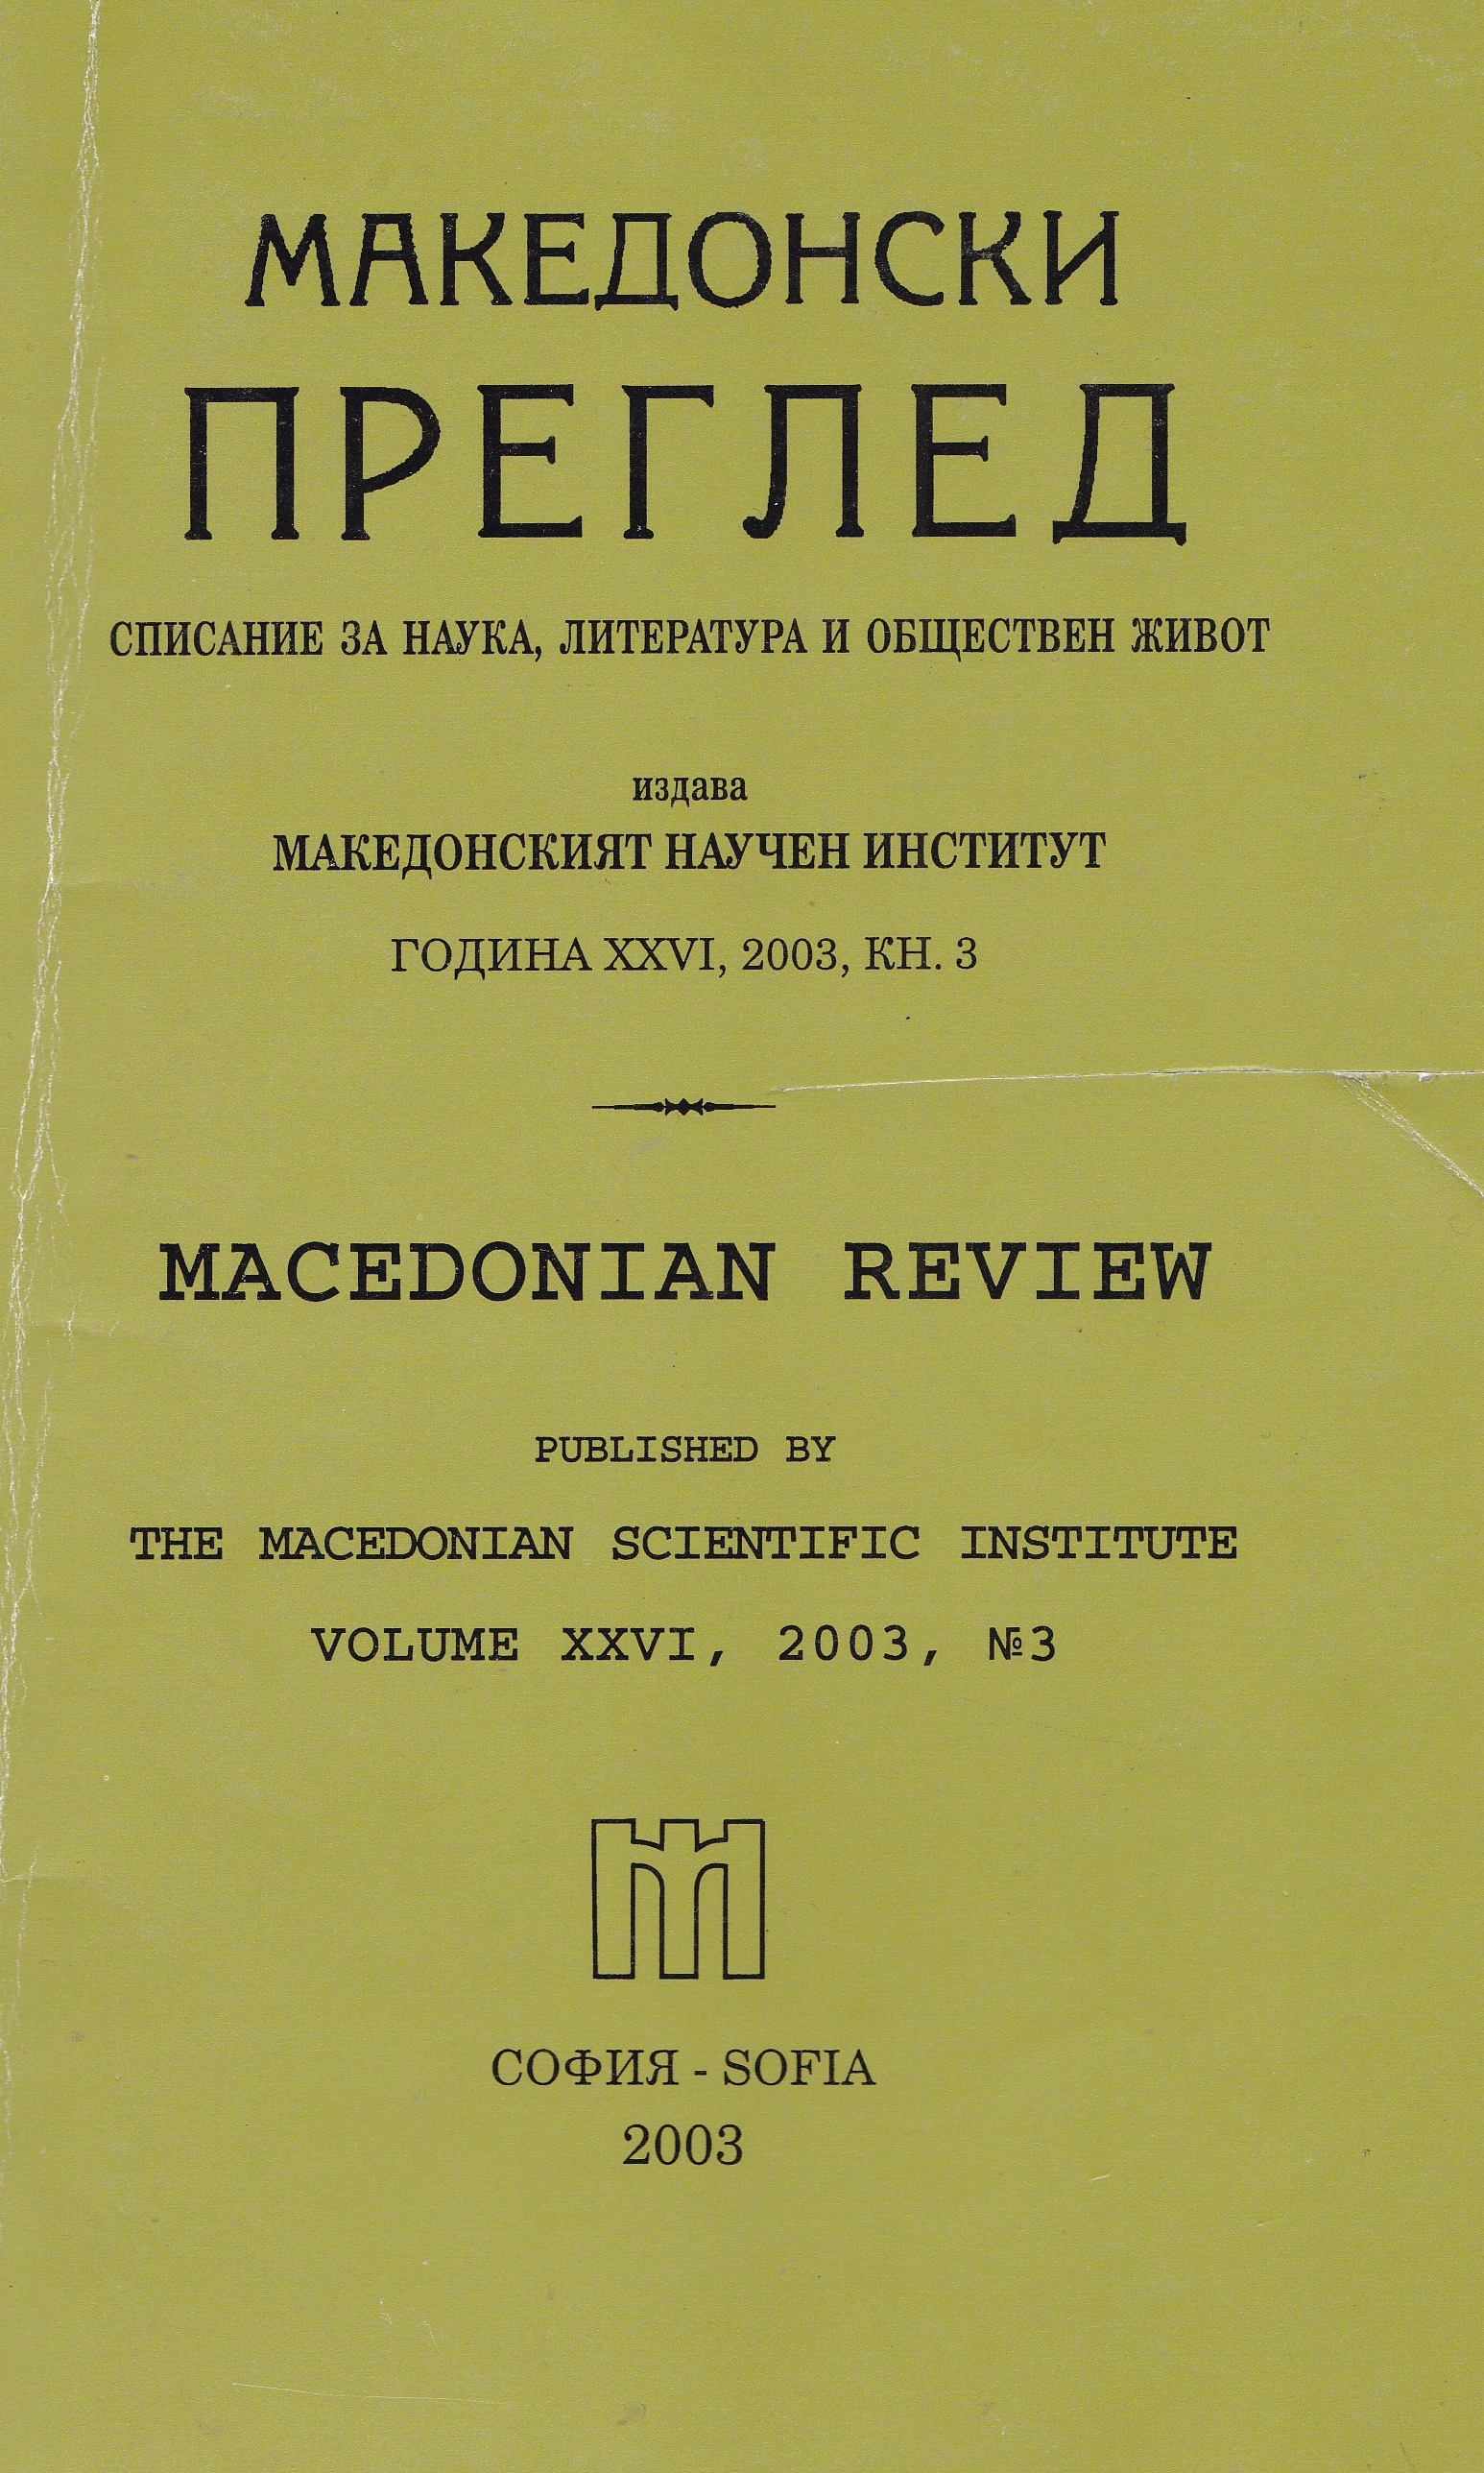 IN MEMORIAM
Acad. Veselin Hadjinikolov (4.V. 1917 — 1.VII. 2003). Cover Image